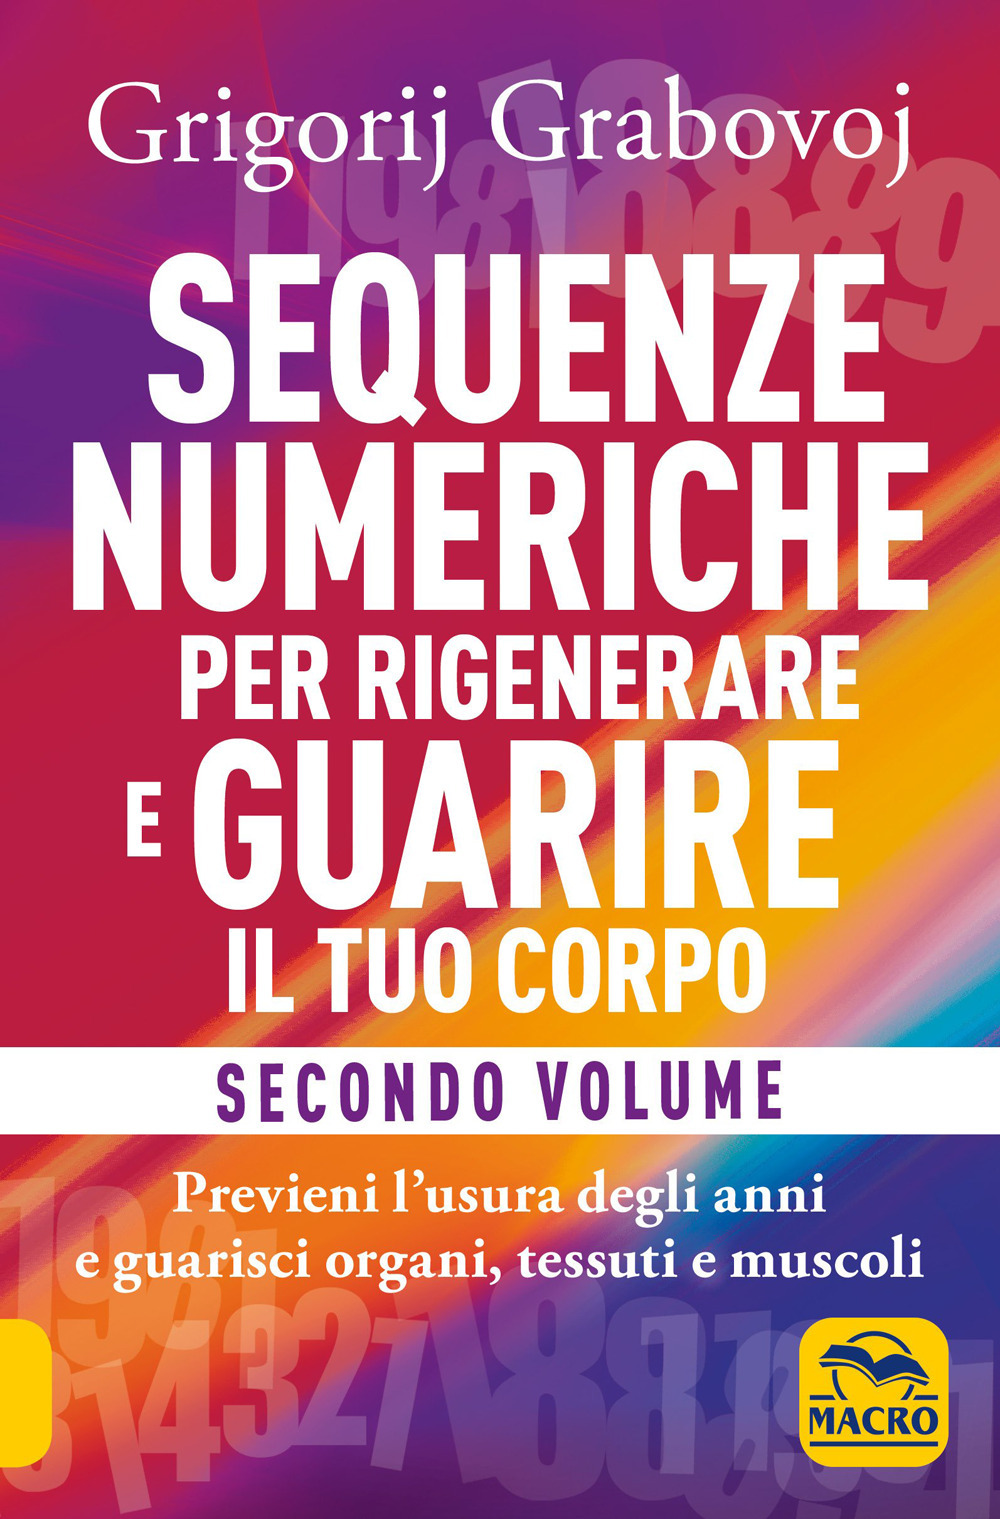 Image of Sequenze numeriche per rigenerare e guarire il tuo corpo. Vol. 2